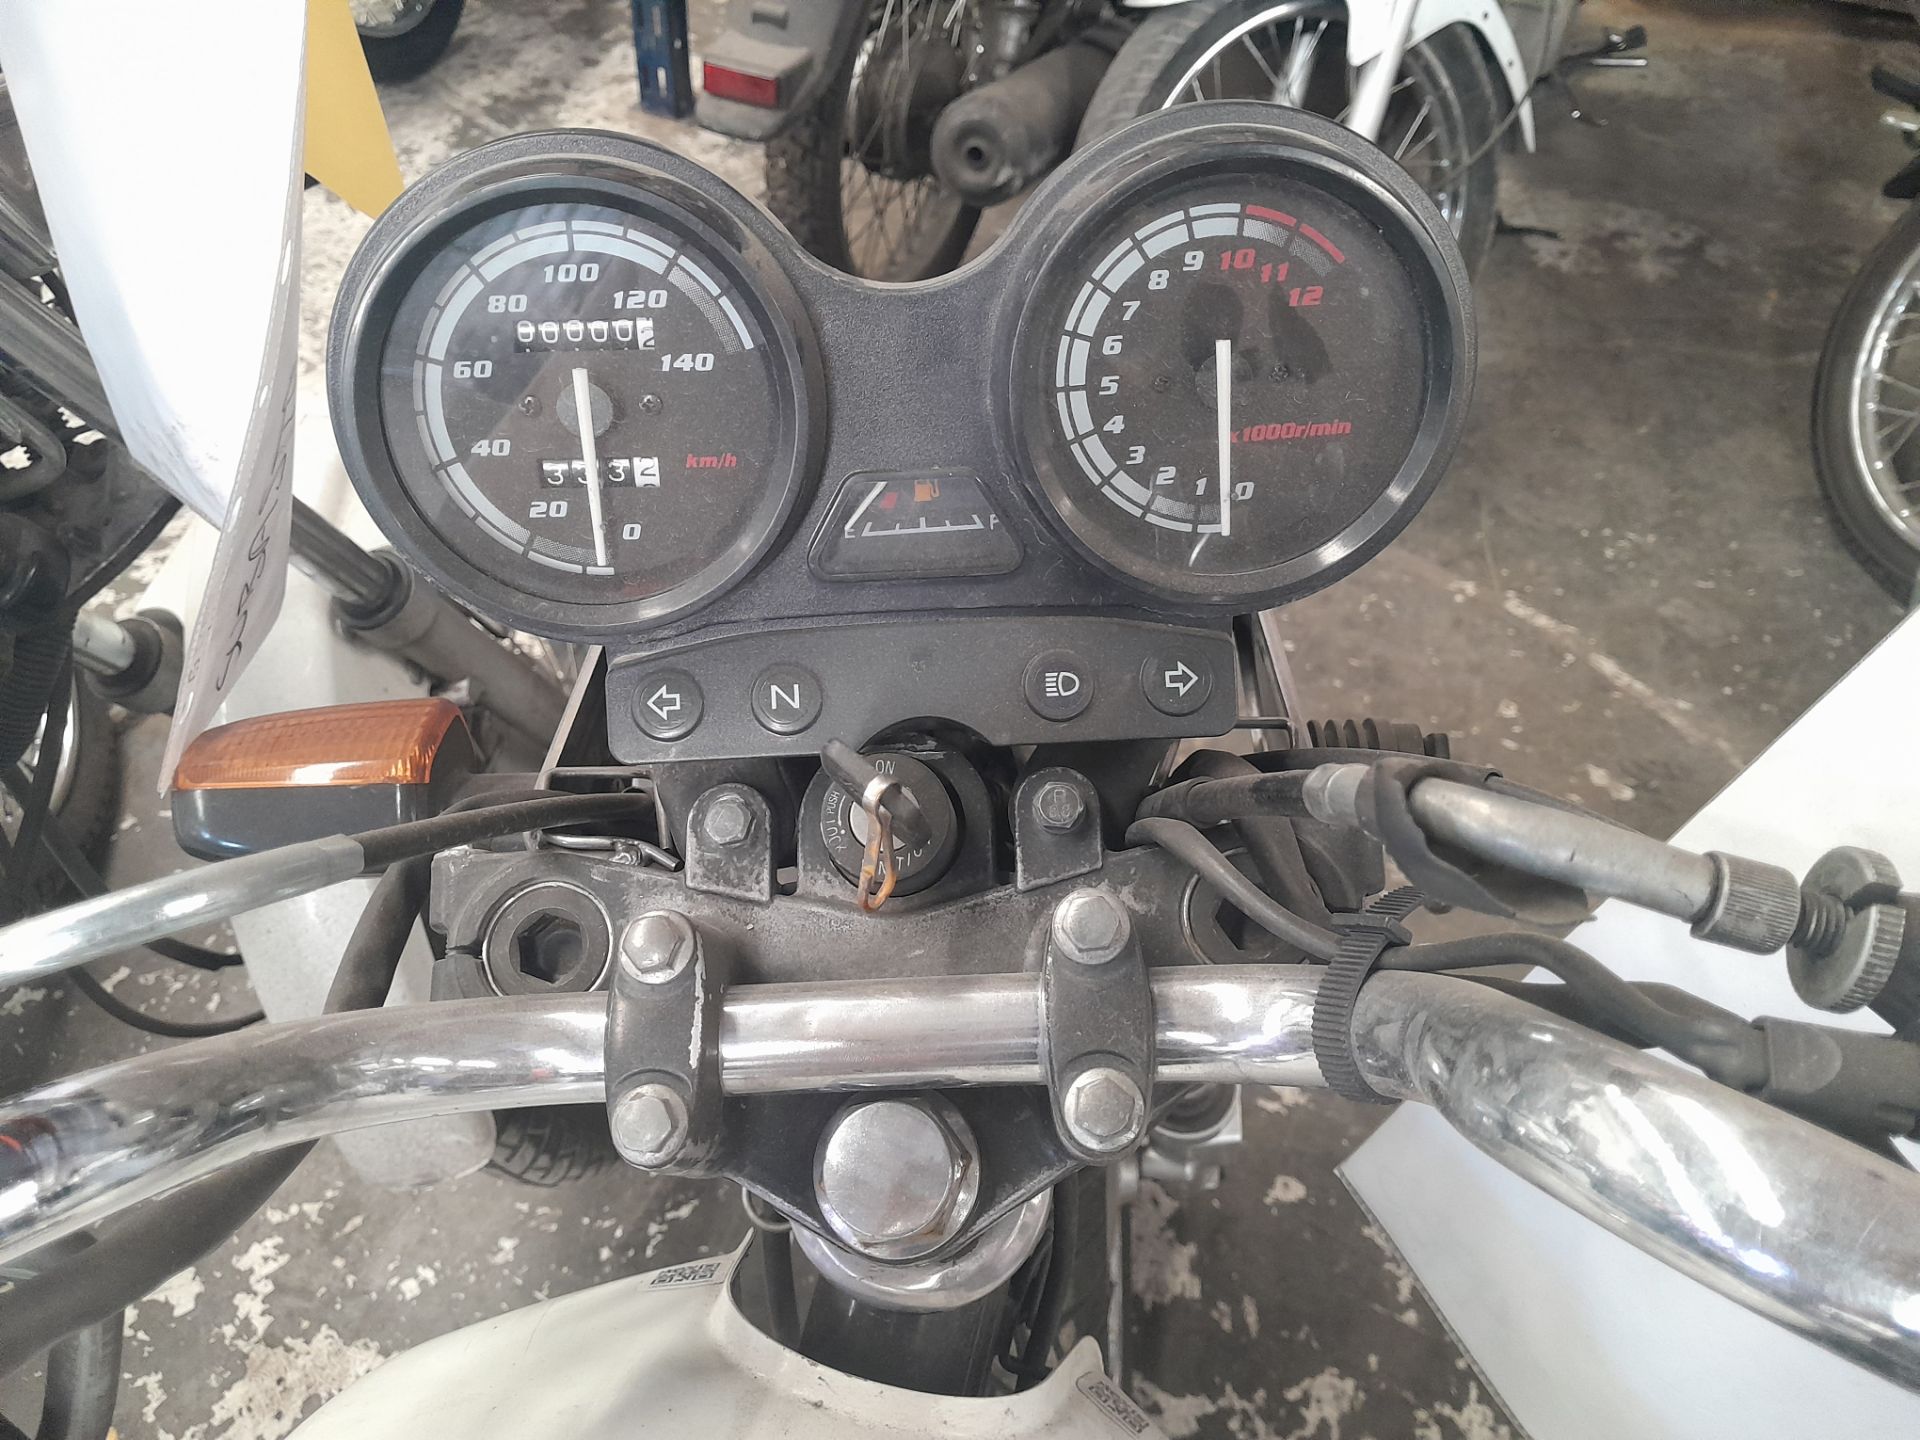 Lote de 2 Motocicletas contiene: 1 Motocicleta de trabajo usada Marca Yamaha YB 125, Modelo 2015, N - Image 9 of 11